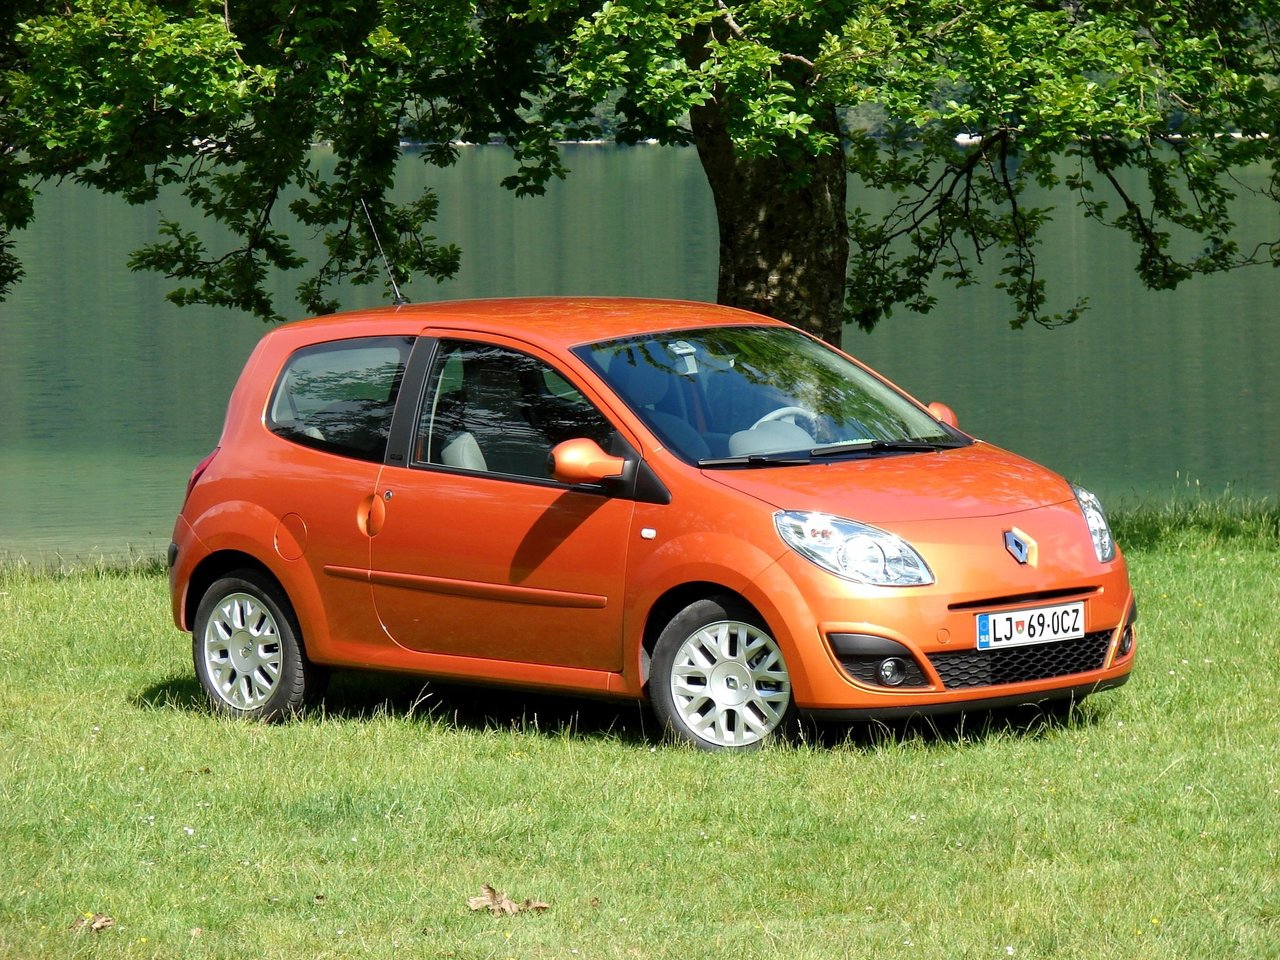 Расход газа двух комплектаций хэтчбека три двери Renault Twingo. Разница стоимости заправки газом и бензином. Автономный пробег до и после установки ГБО.